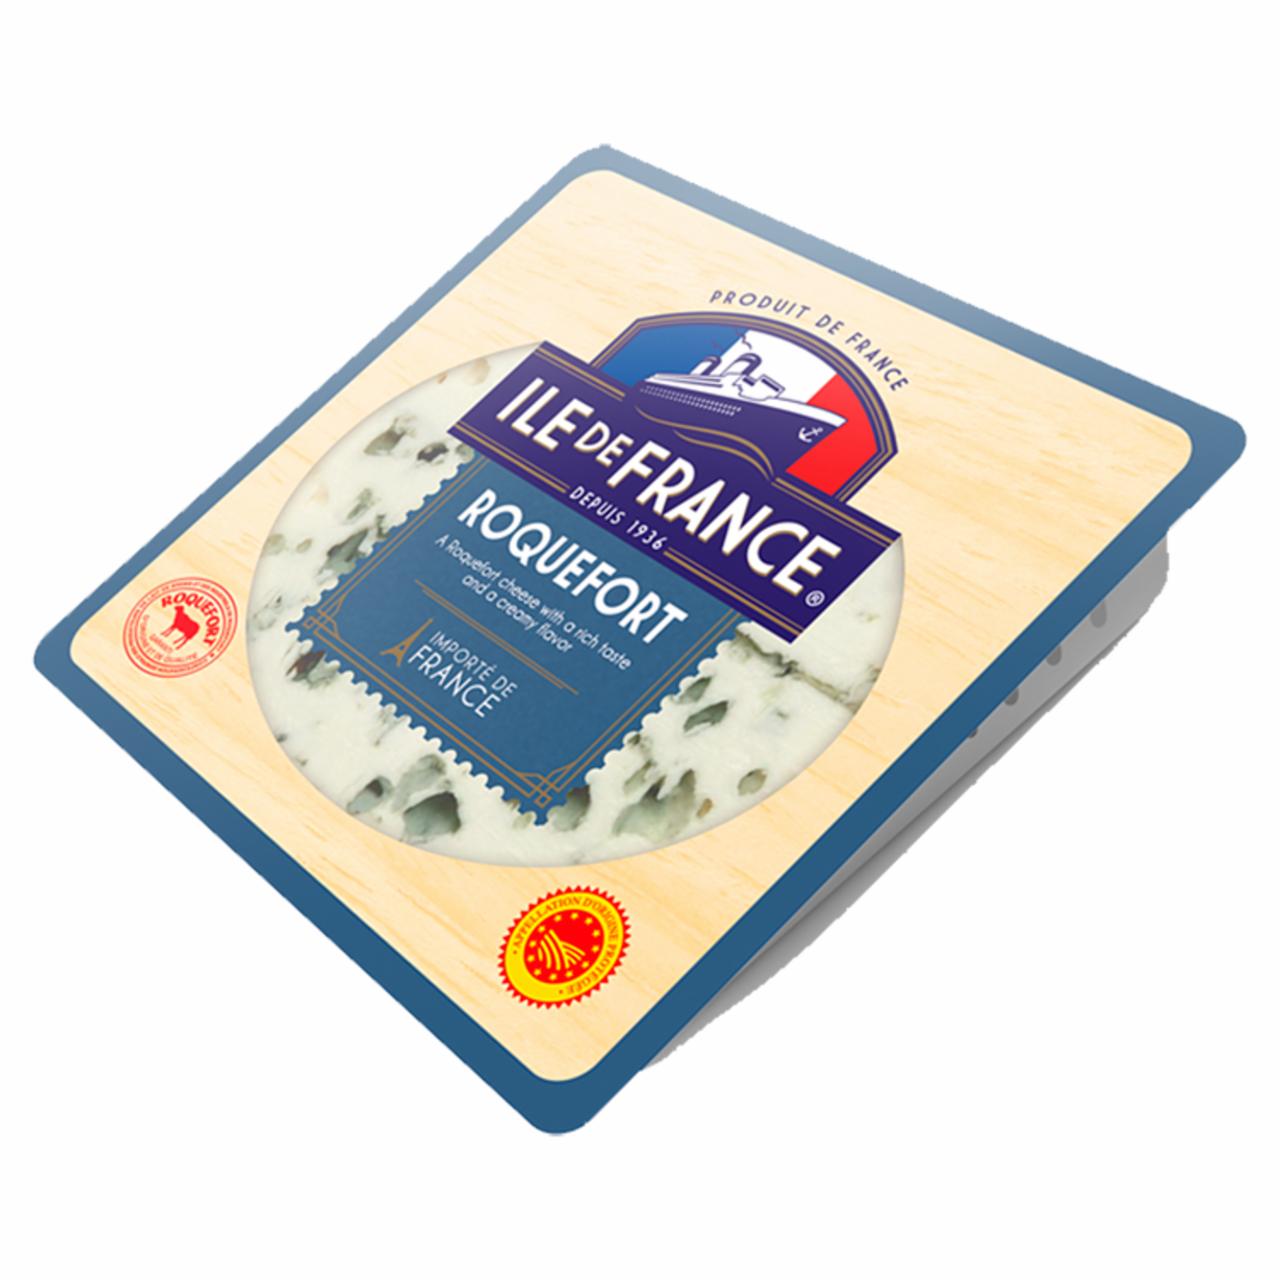 Képek - Ile de France Roquefort kékpenésszel érlelt, zsíros félkemény sajt 100 g